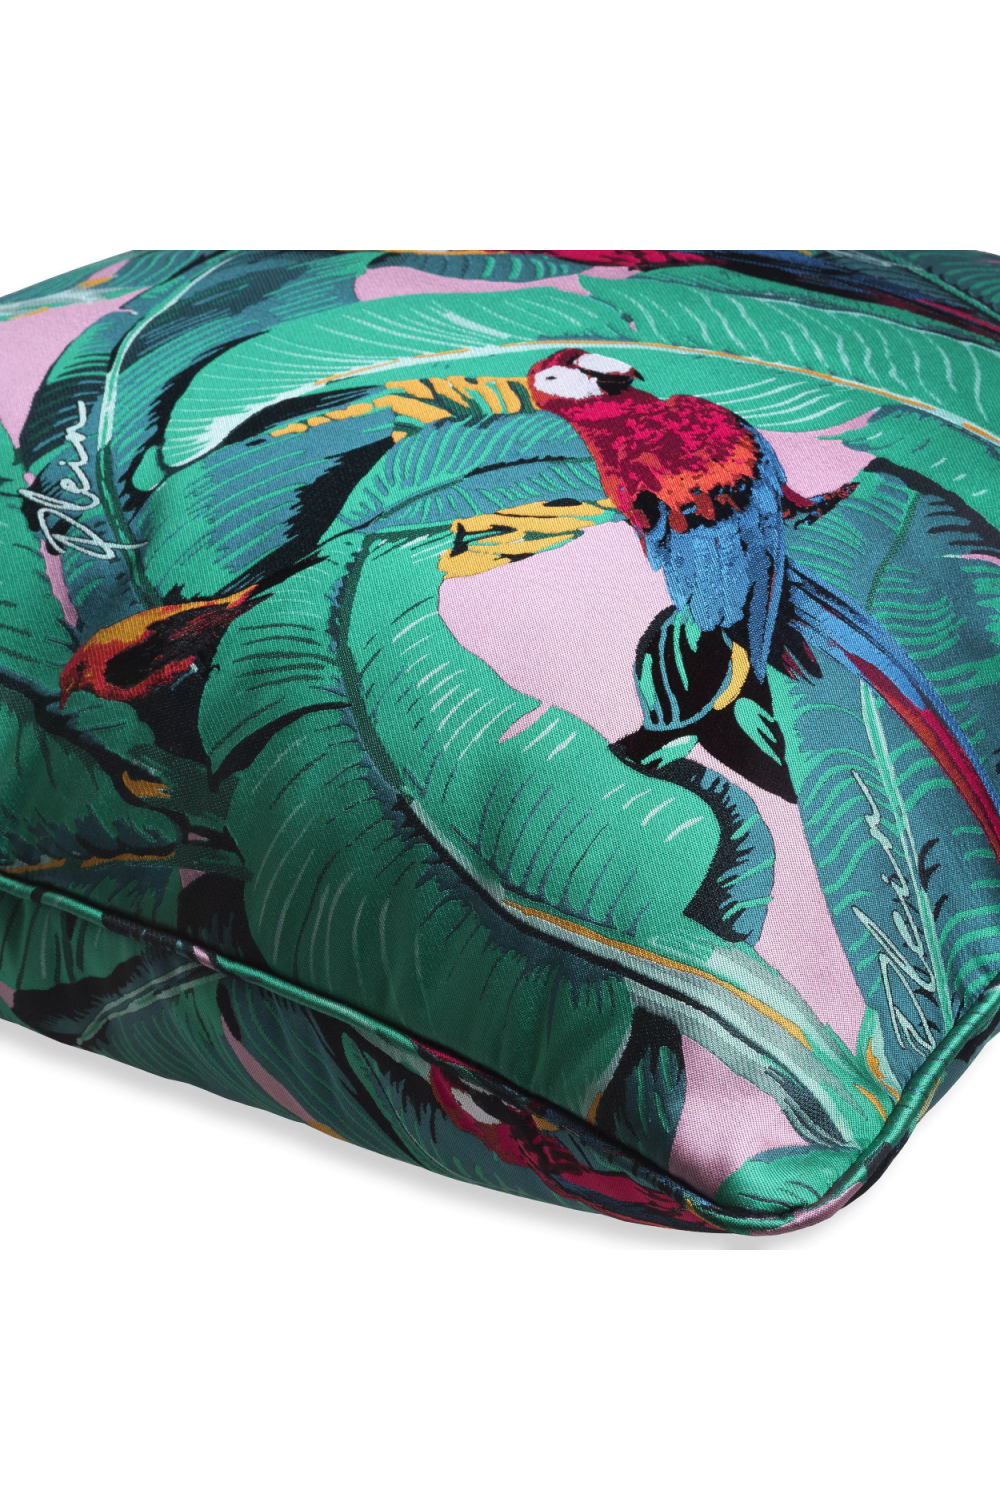 Wildlife Design Jacquard Cushion M | Philipp Plein Parrot | Oroa.com